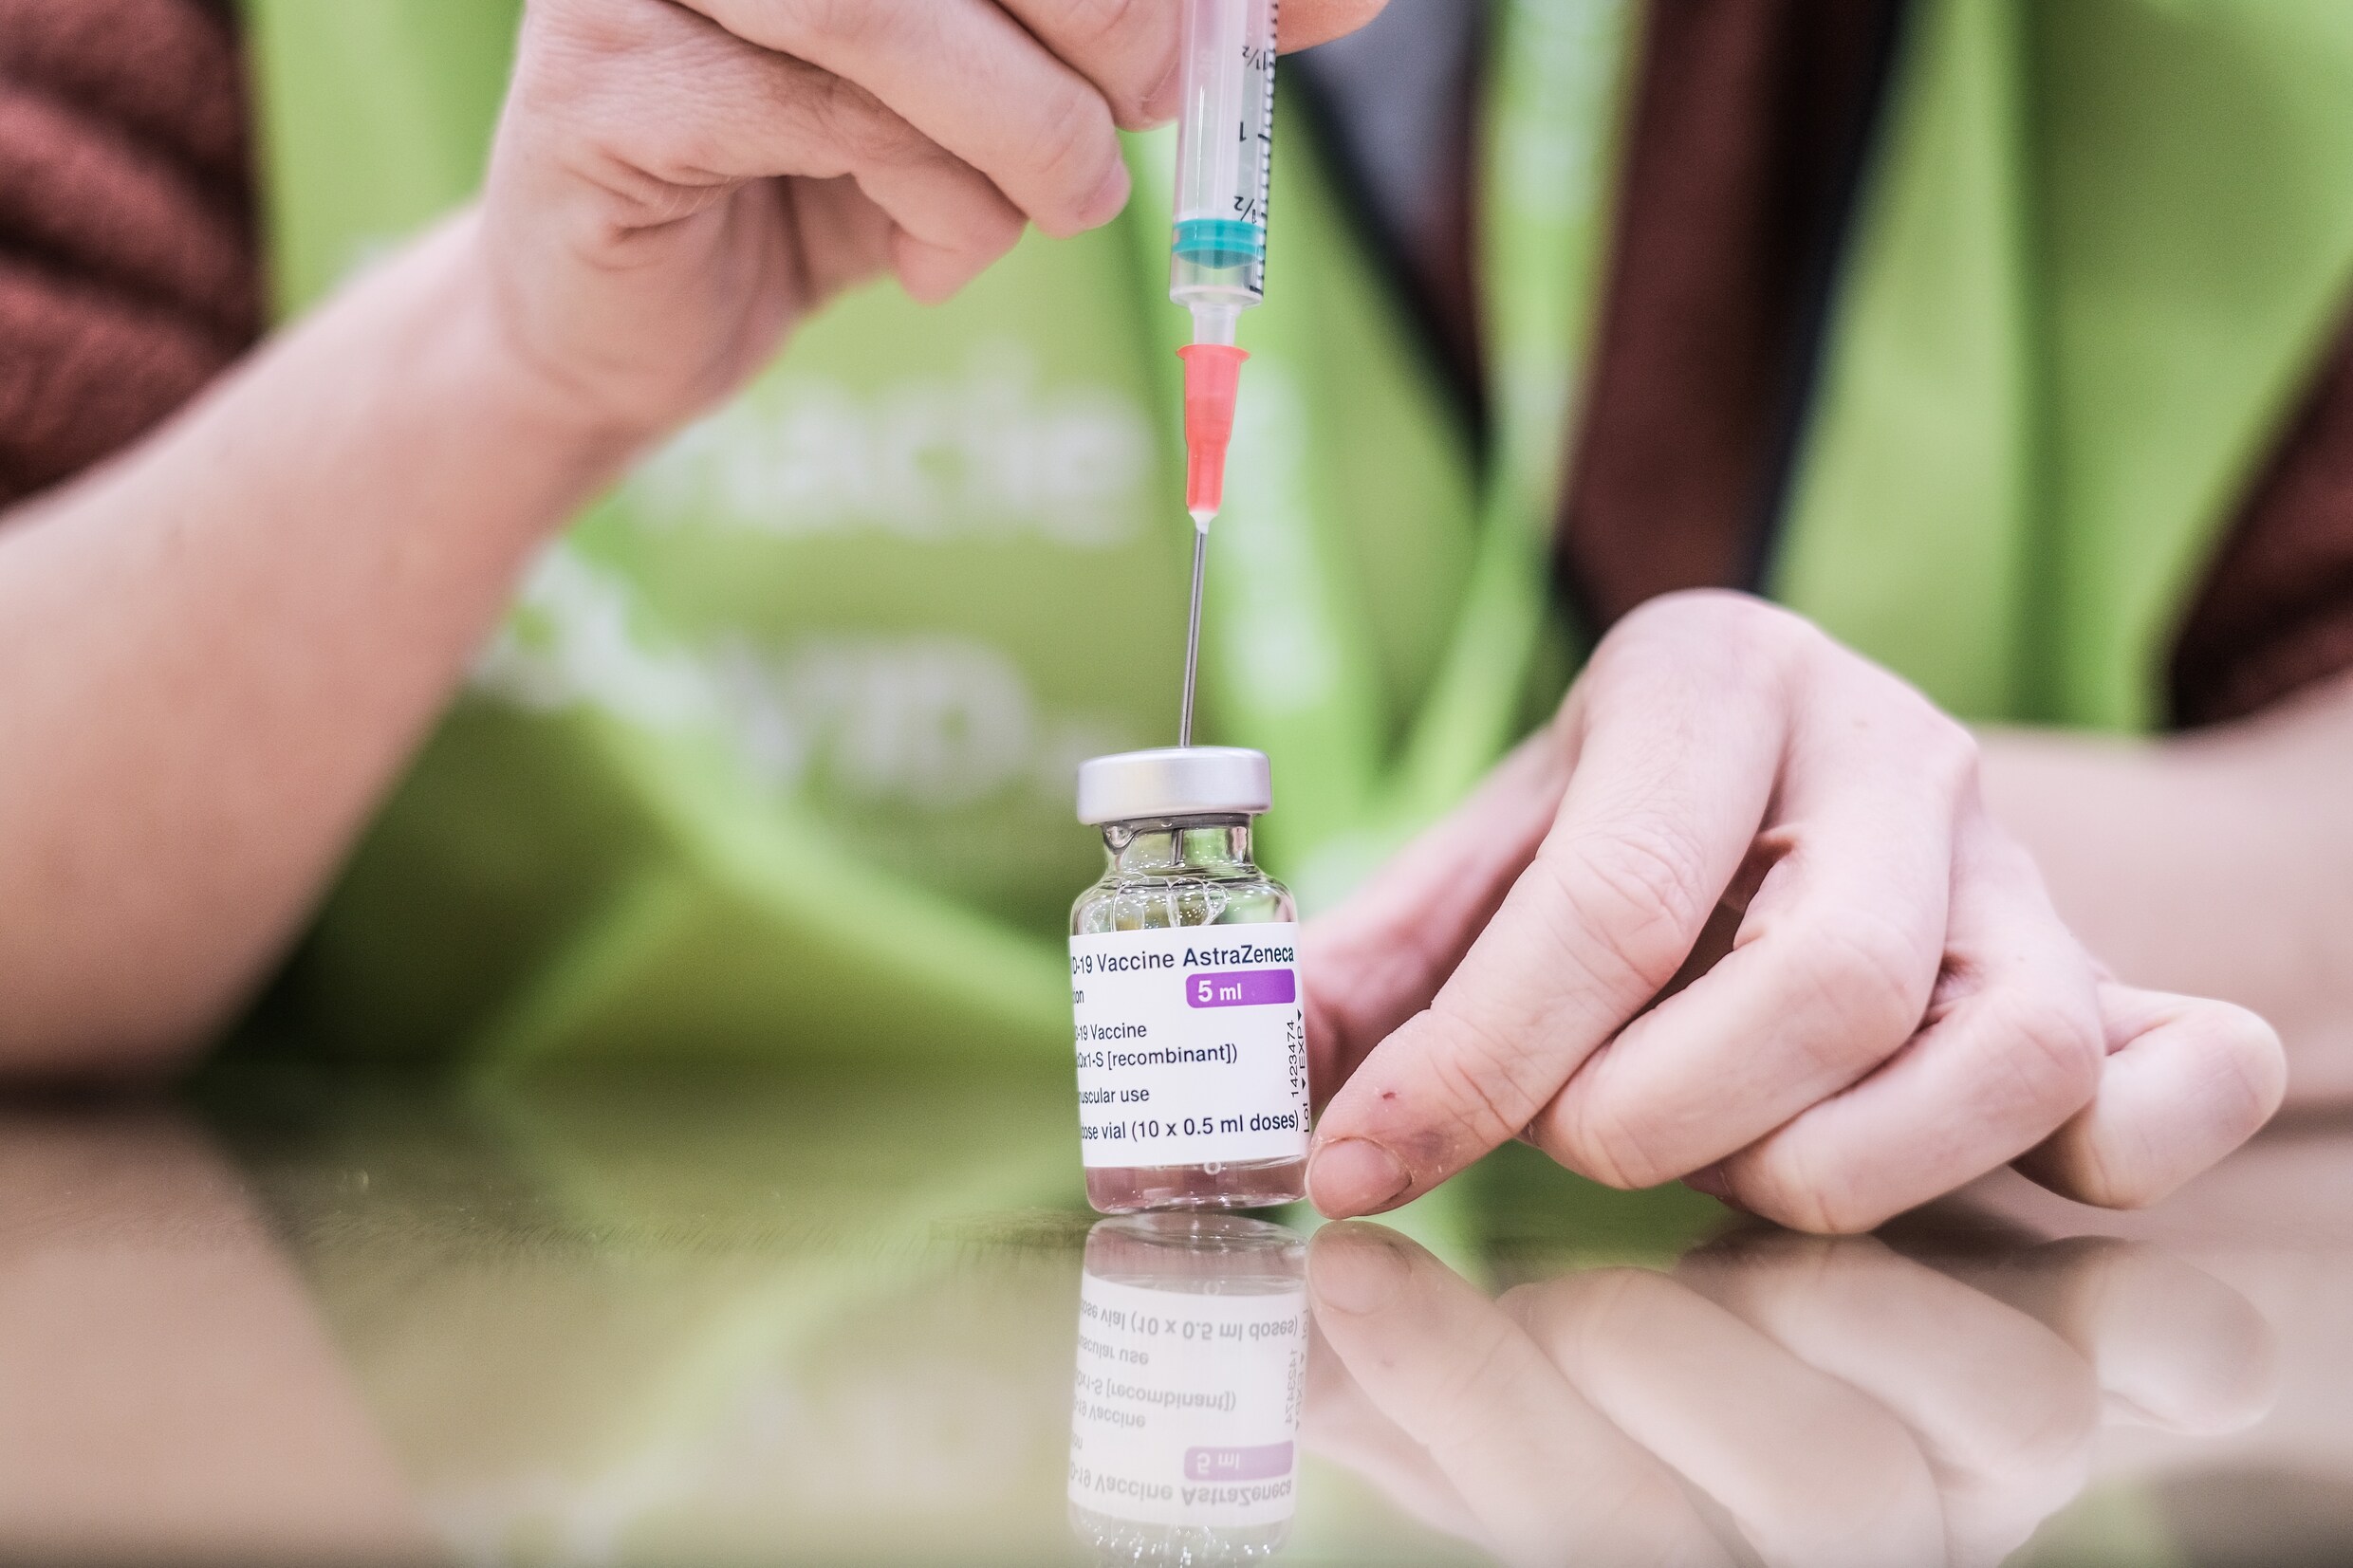 België wacht advies van EMA af over AstraZeneca-vaccin maar ‘kans is groot dat leeftijdsgrens wordt opgelegd’